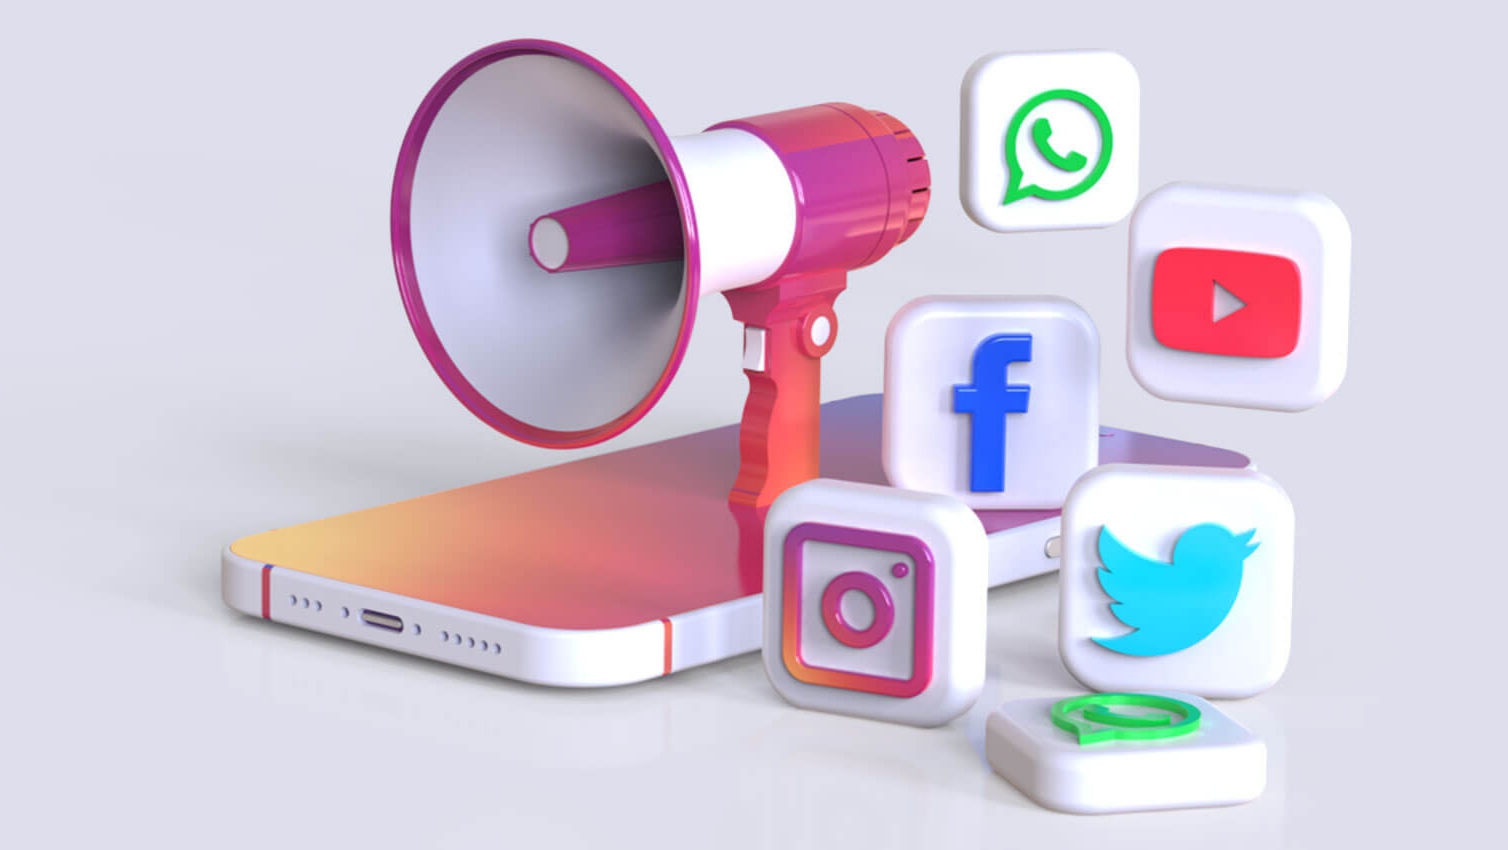 Digital marketing and power of social media